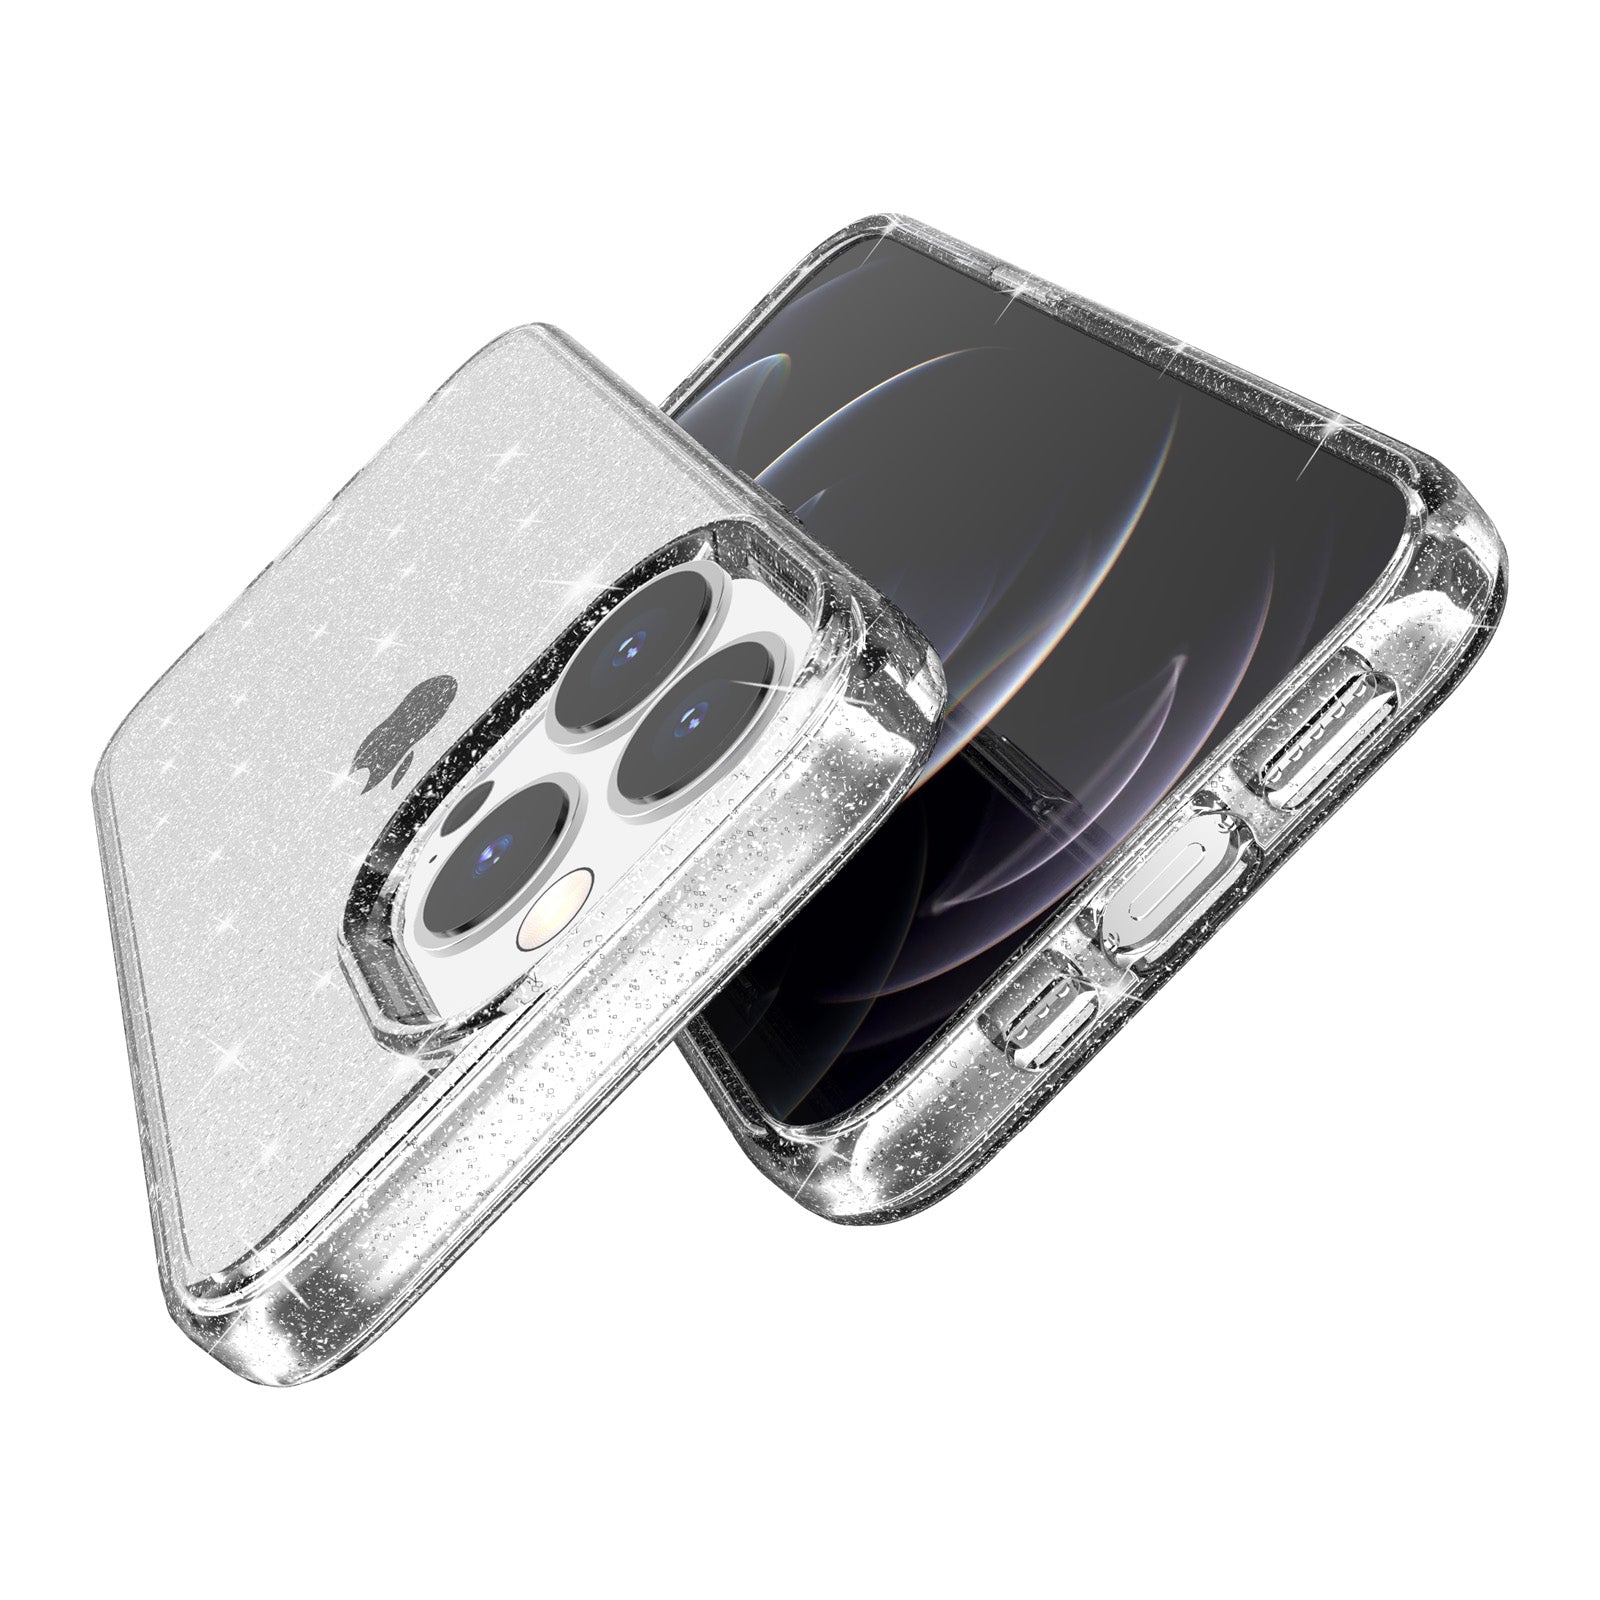 Uniqkart for iPhone 15 Pro Sparkly Glitter Anti-Scratch Case Hard PC + Soft TPU Phone Cover - White